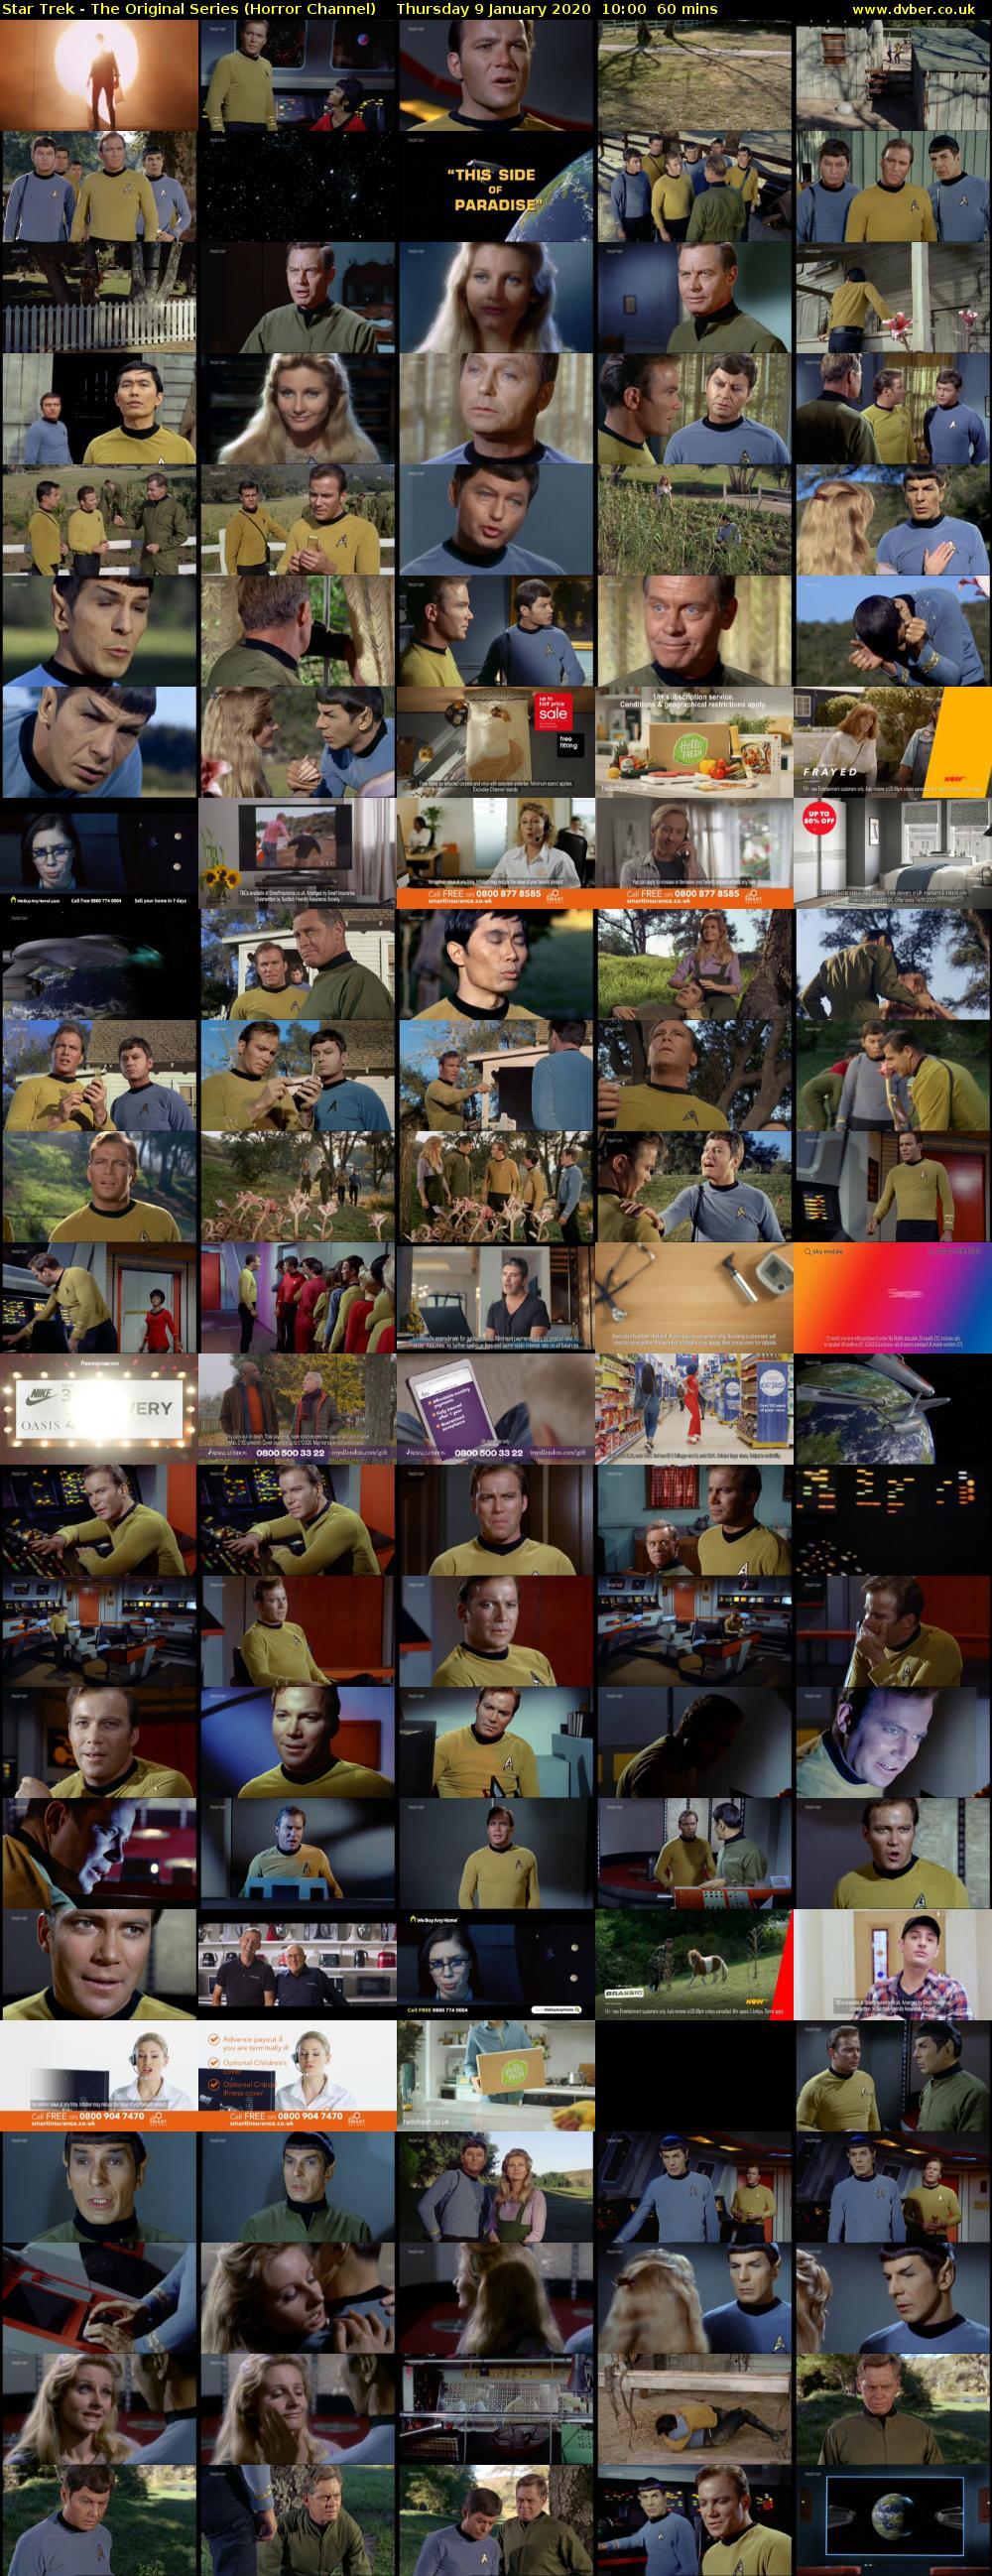 Star Trek - The Original Series (Horror Channel) Thursday 9 January 2020 10:00 - 11:00